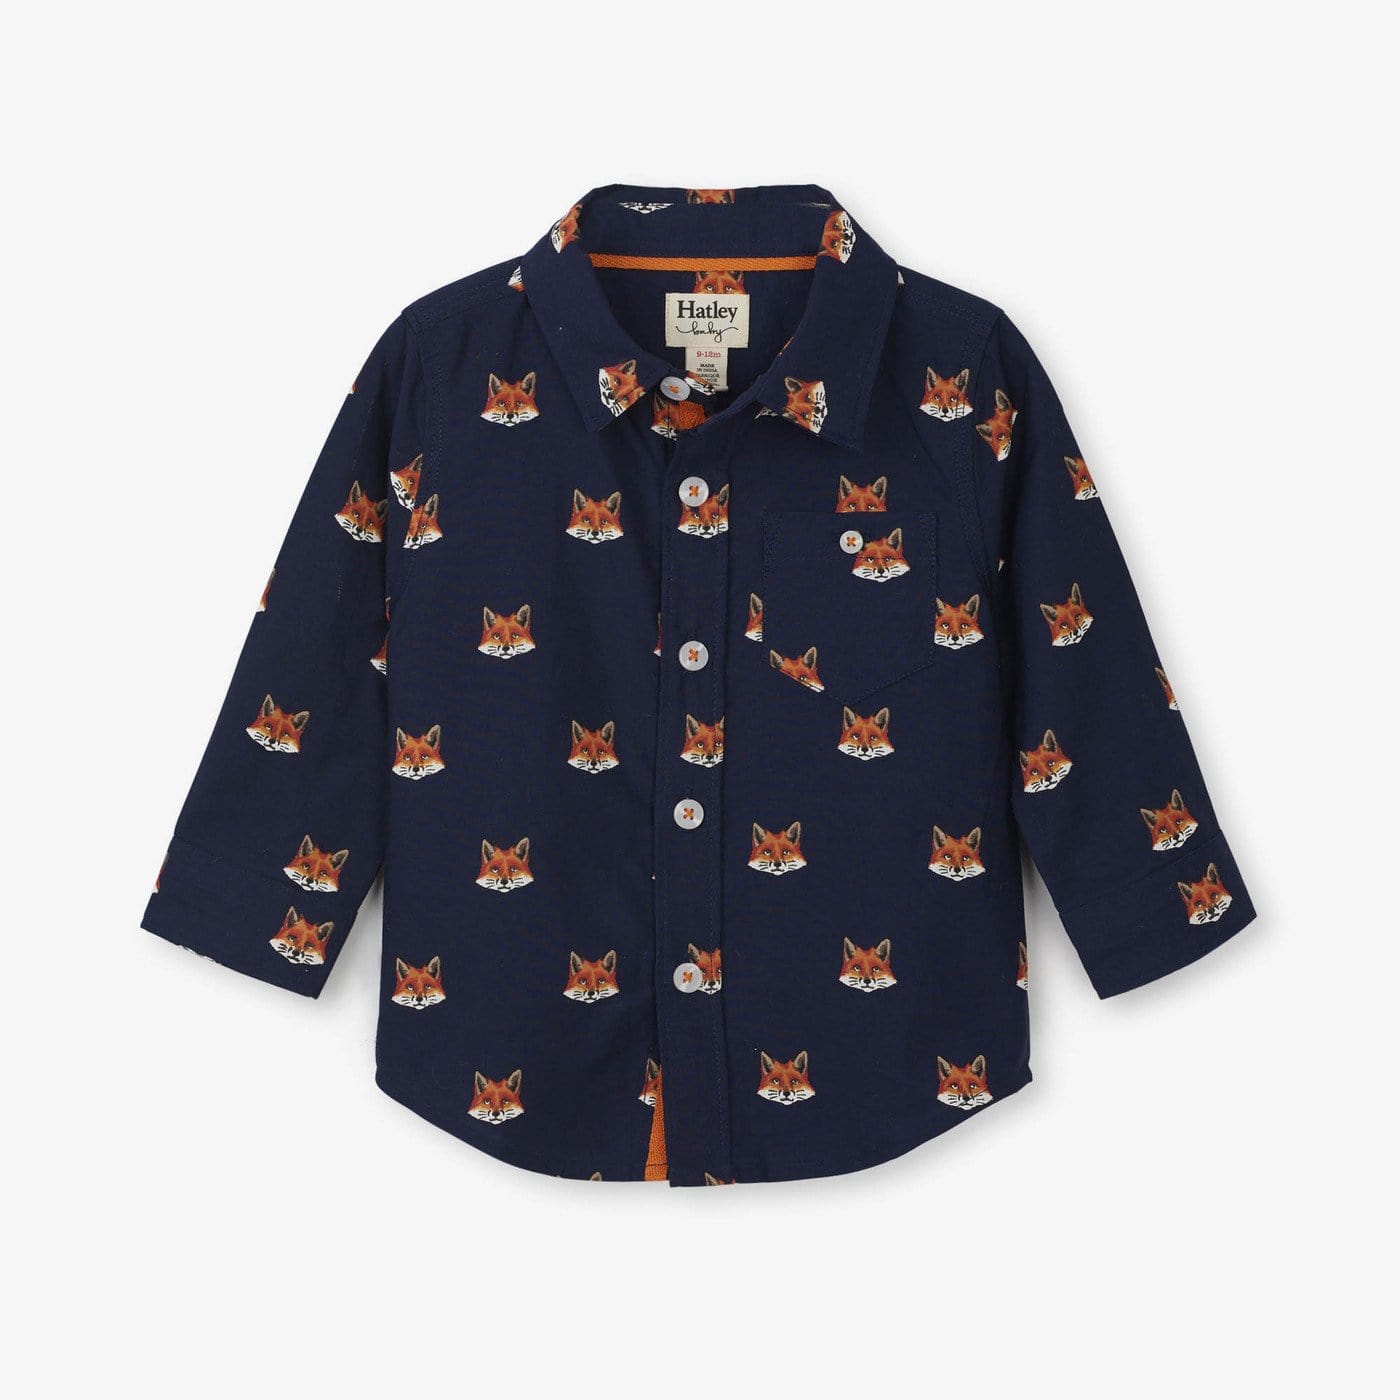 Hatley ’Clever Fox’ Navy Shirt - Shirt